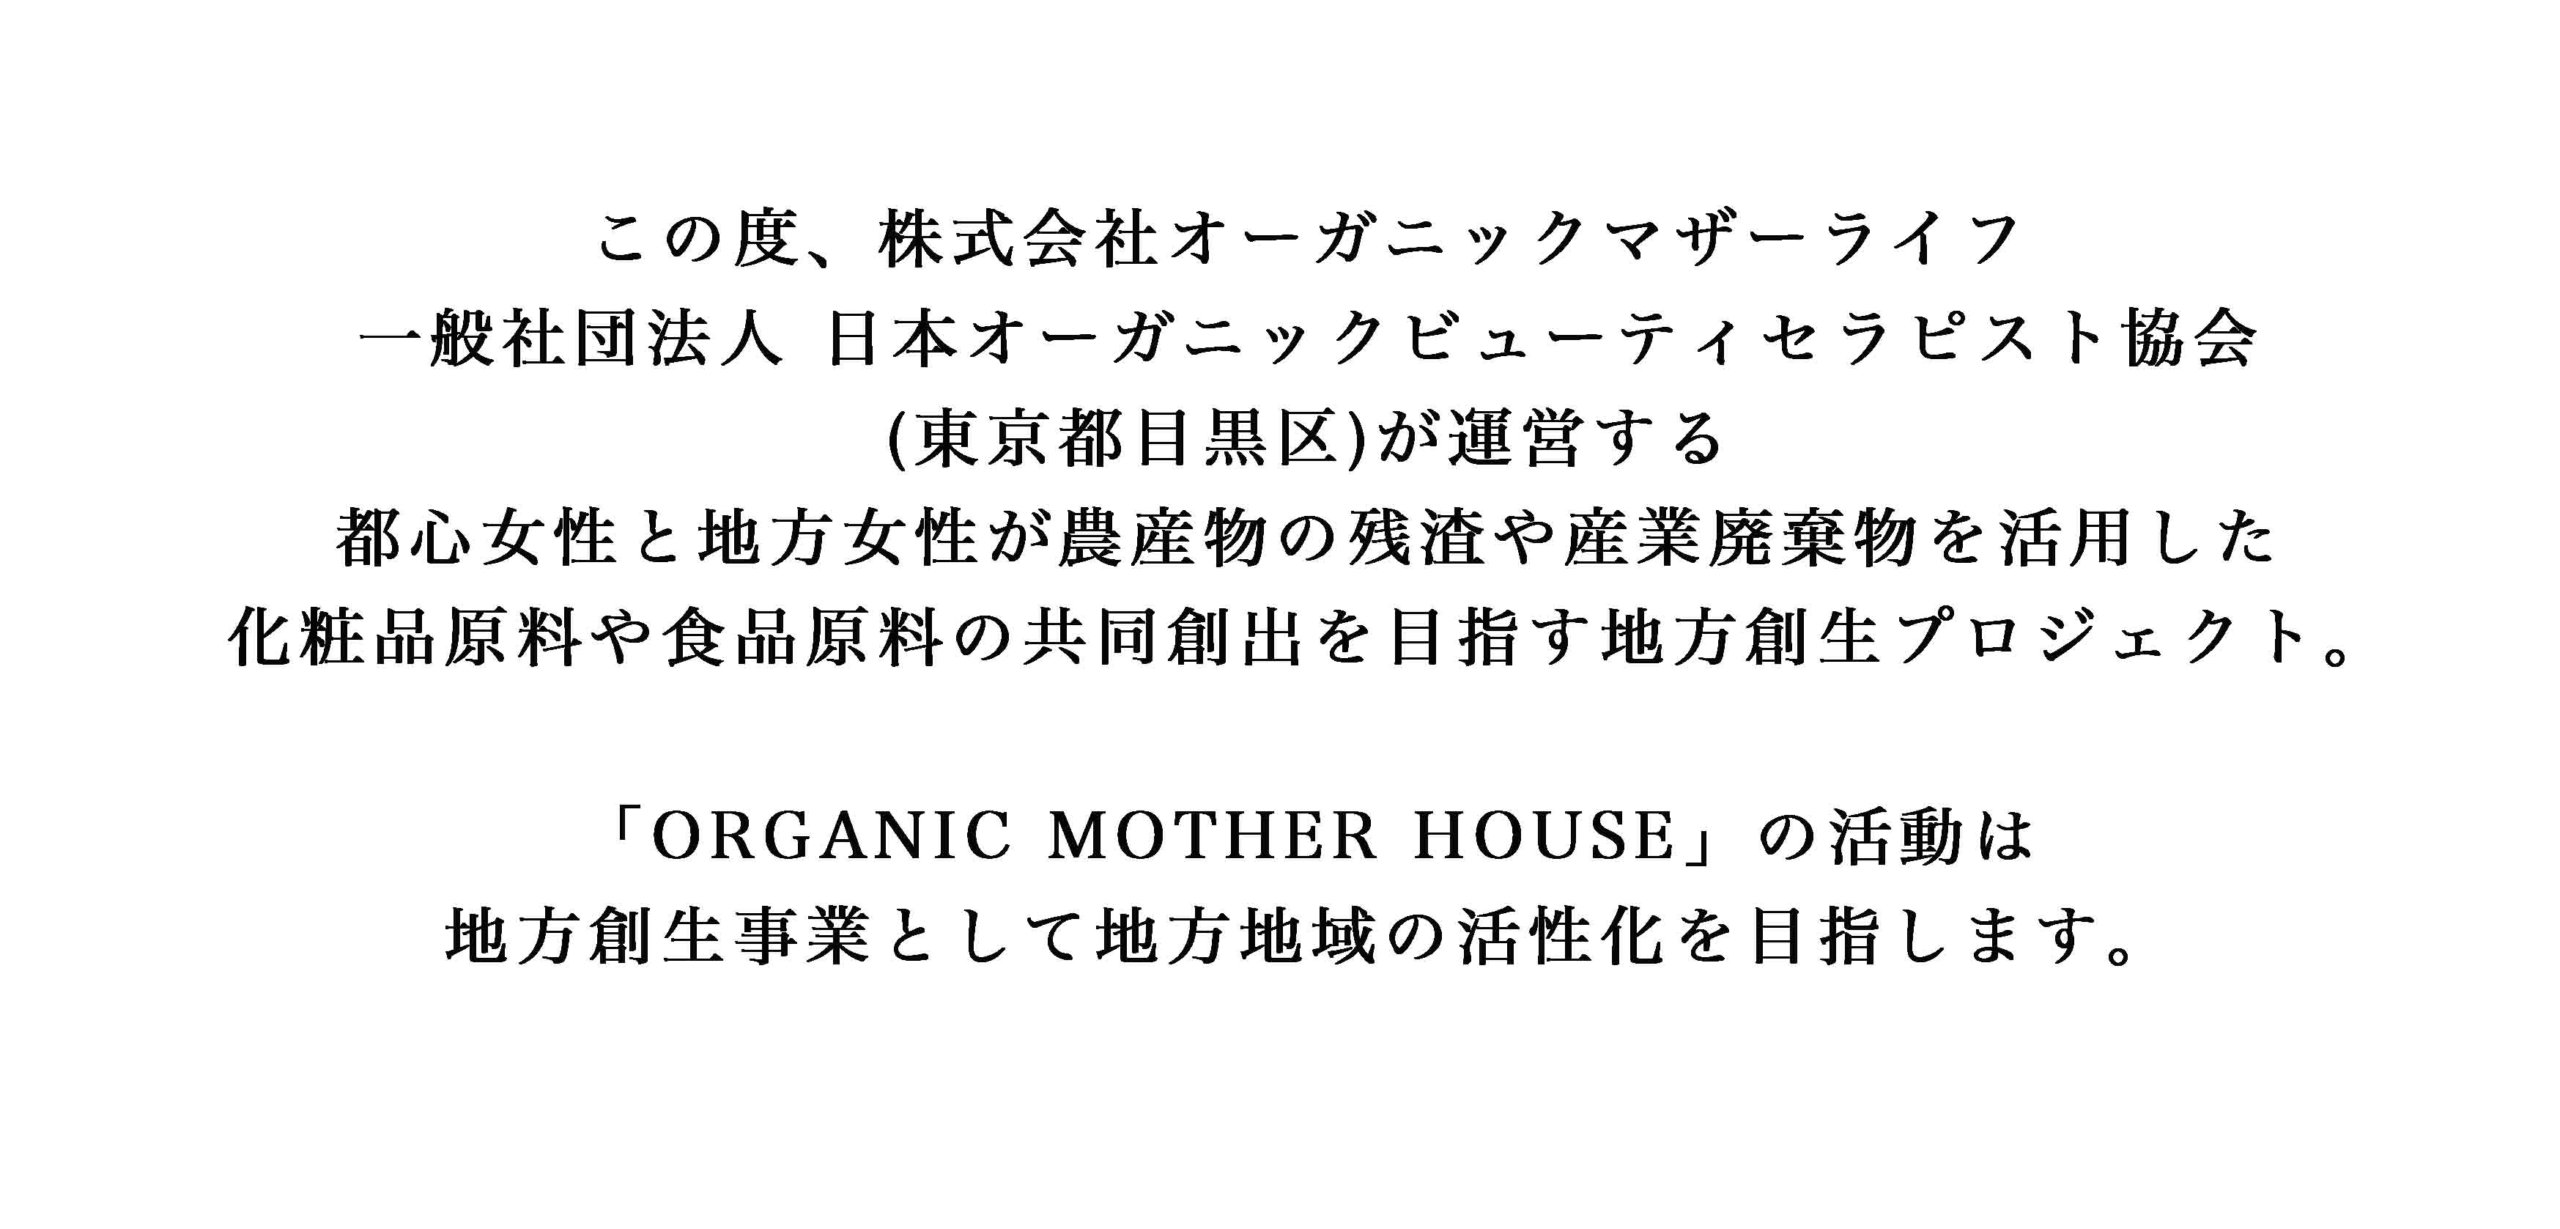 この度、株式会社オーガニックマザーライフ 一般社団法人 日本オーガニックビューティセラピスト協会